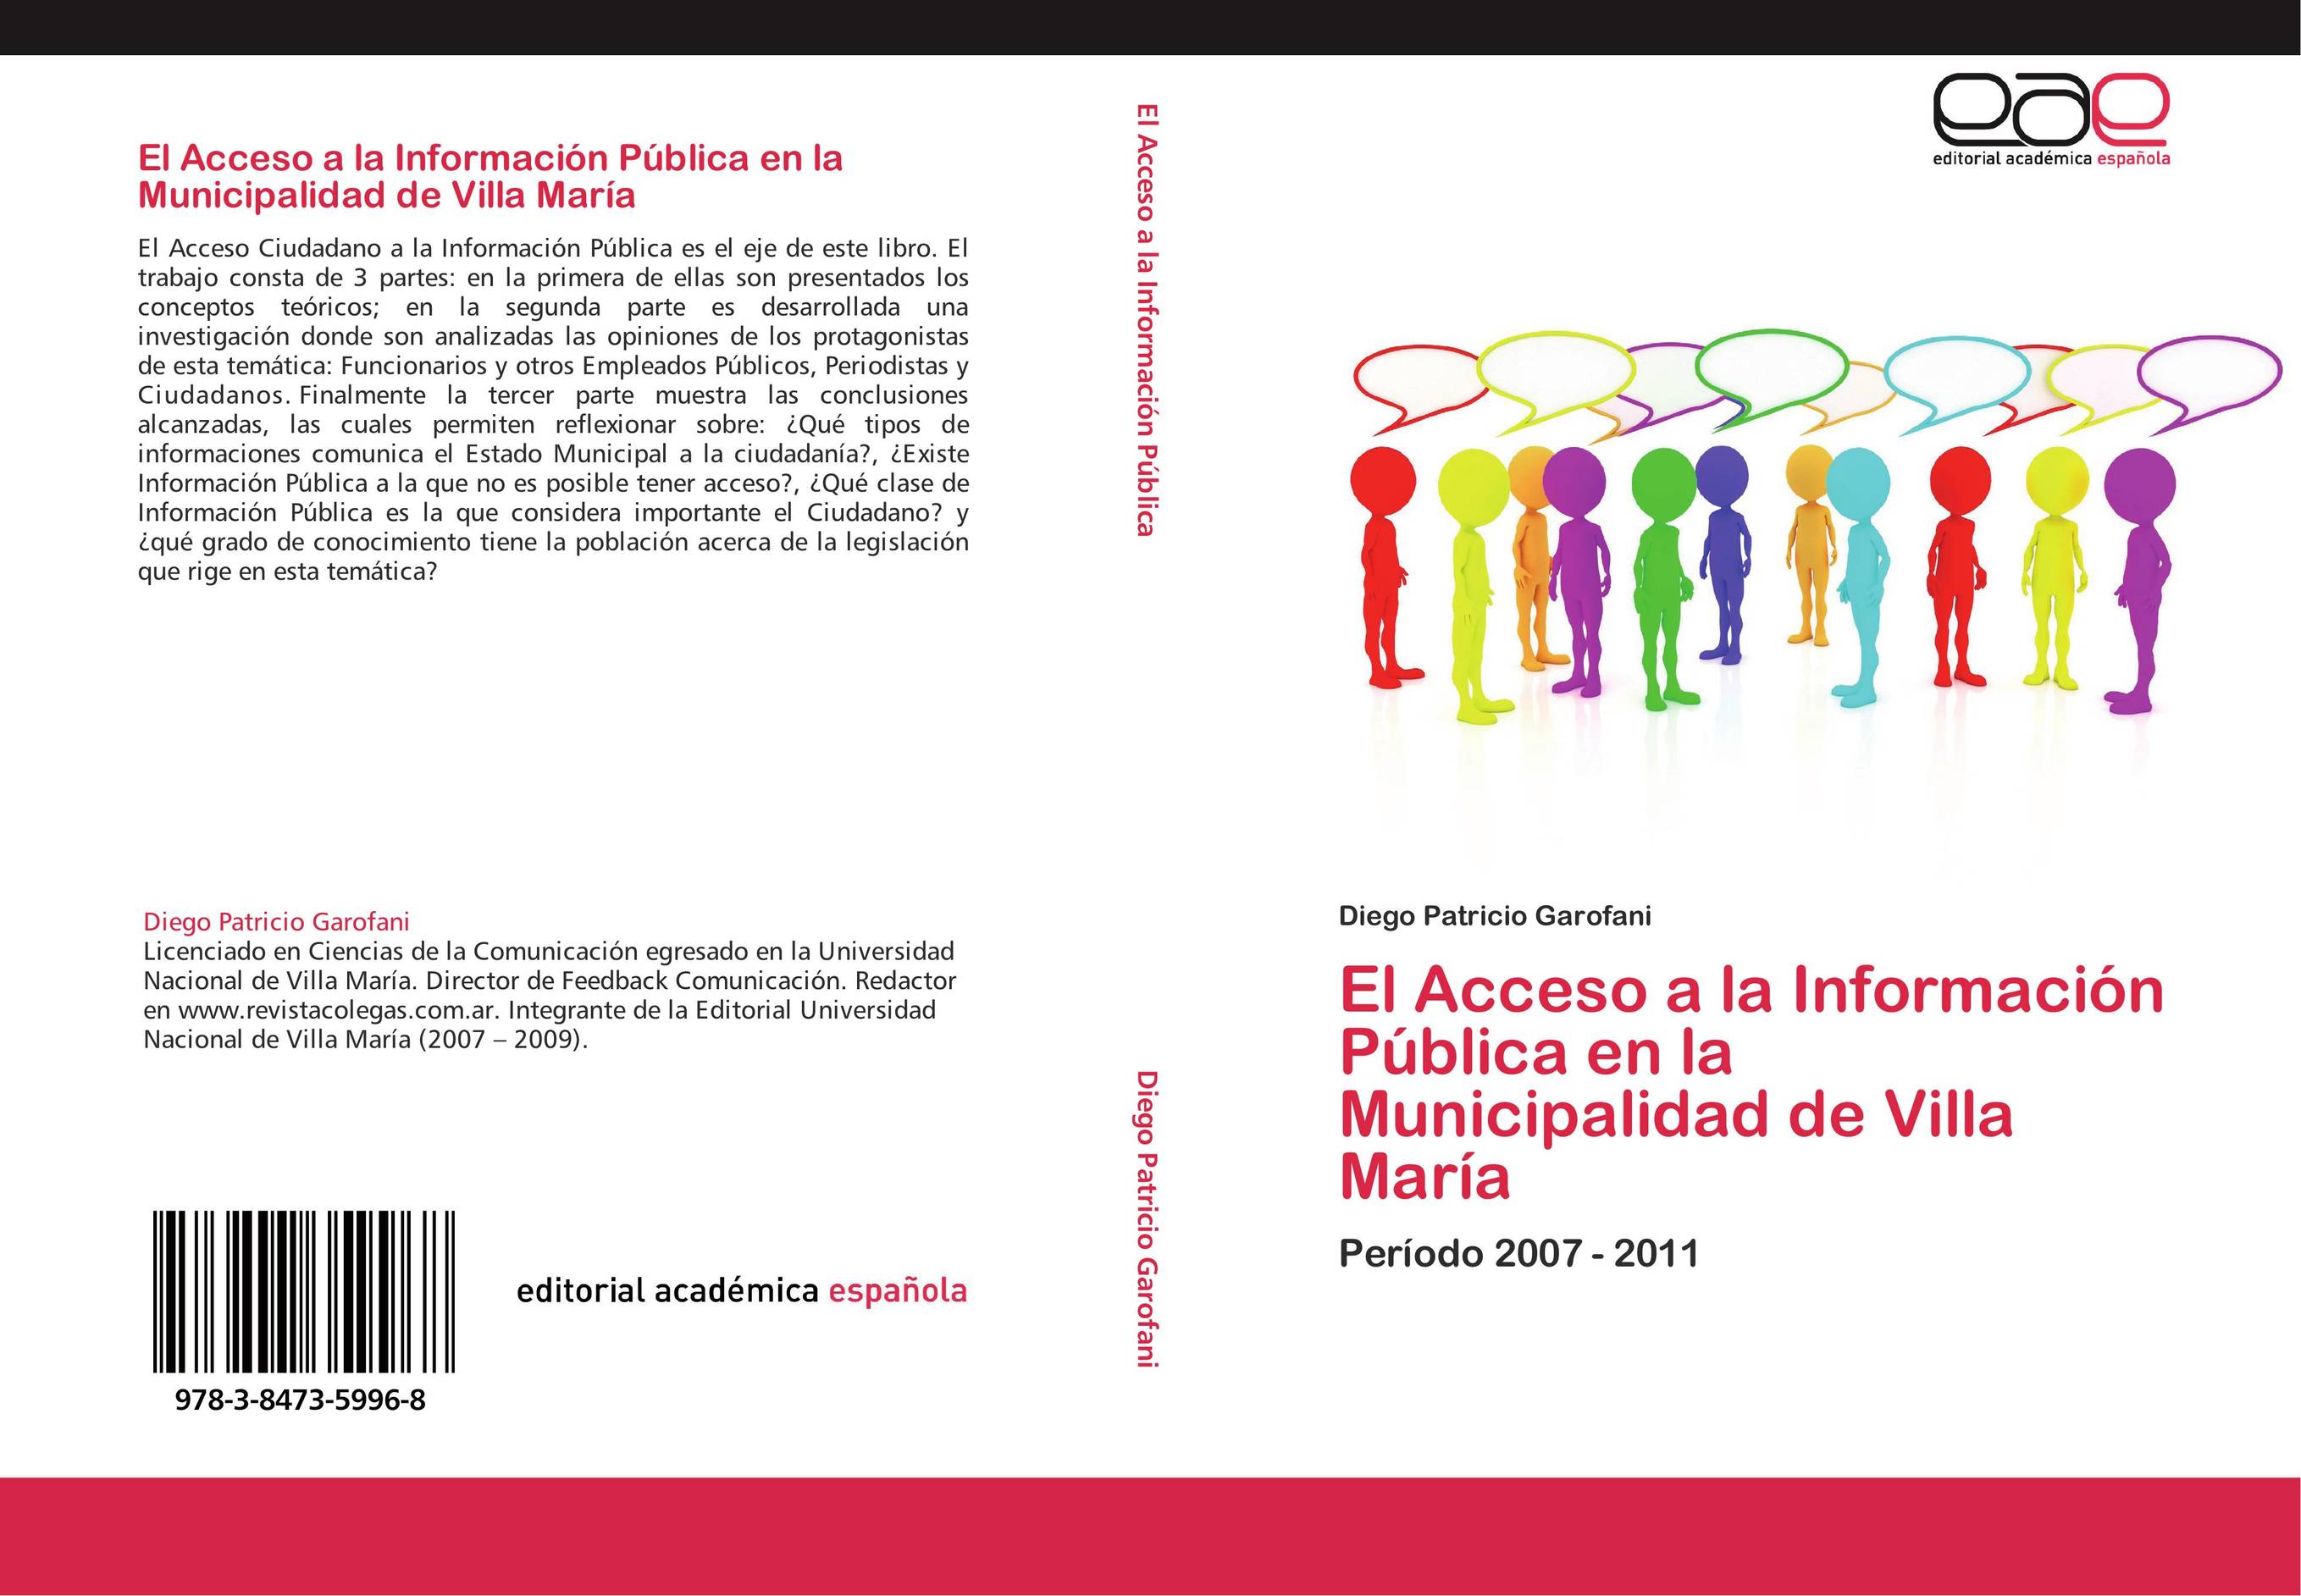 El Acceso a la Información Pública en la Municipalidad de Villa María